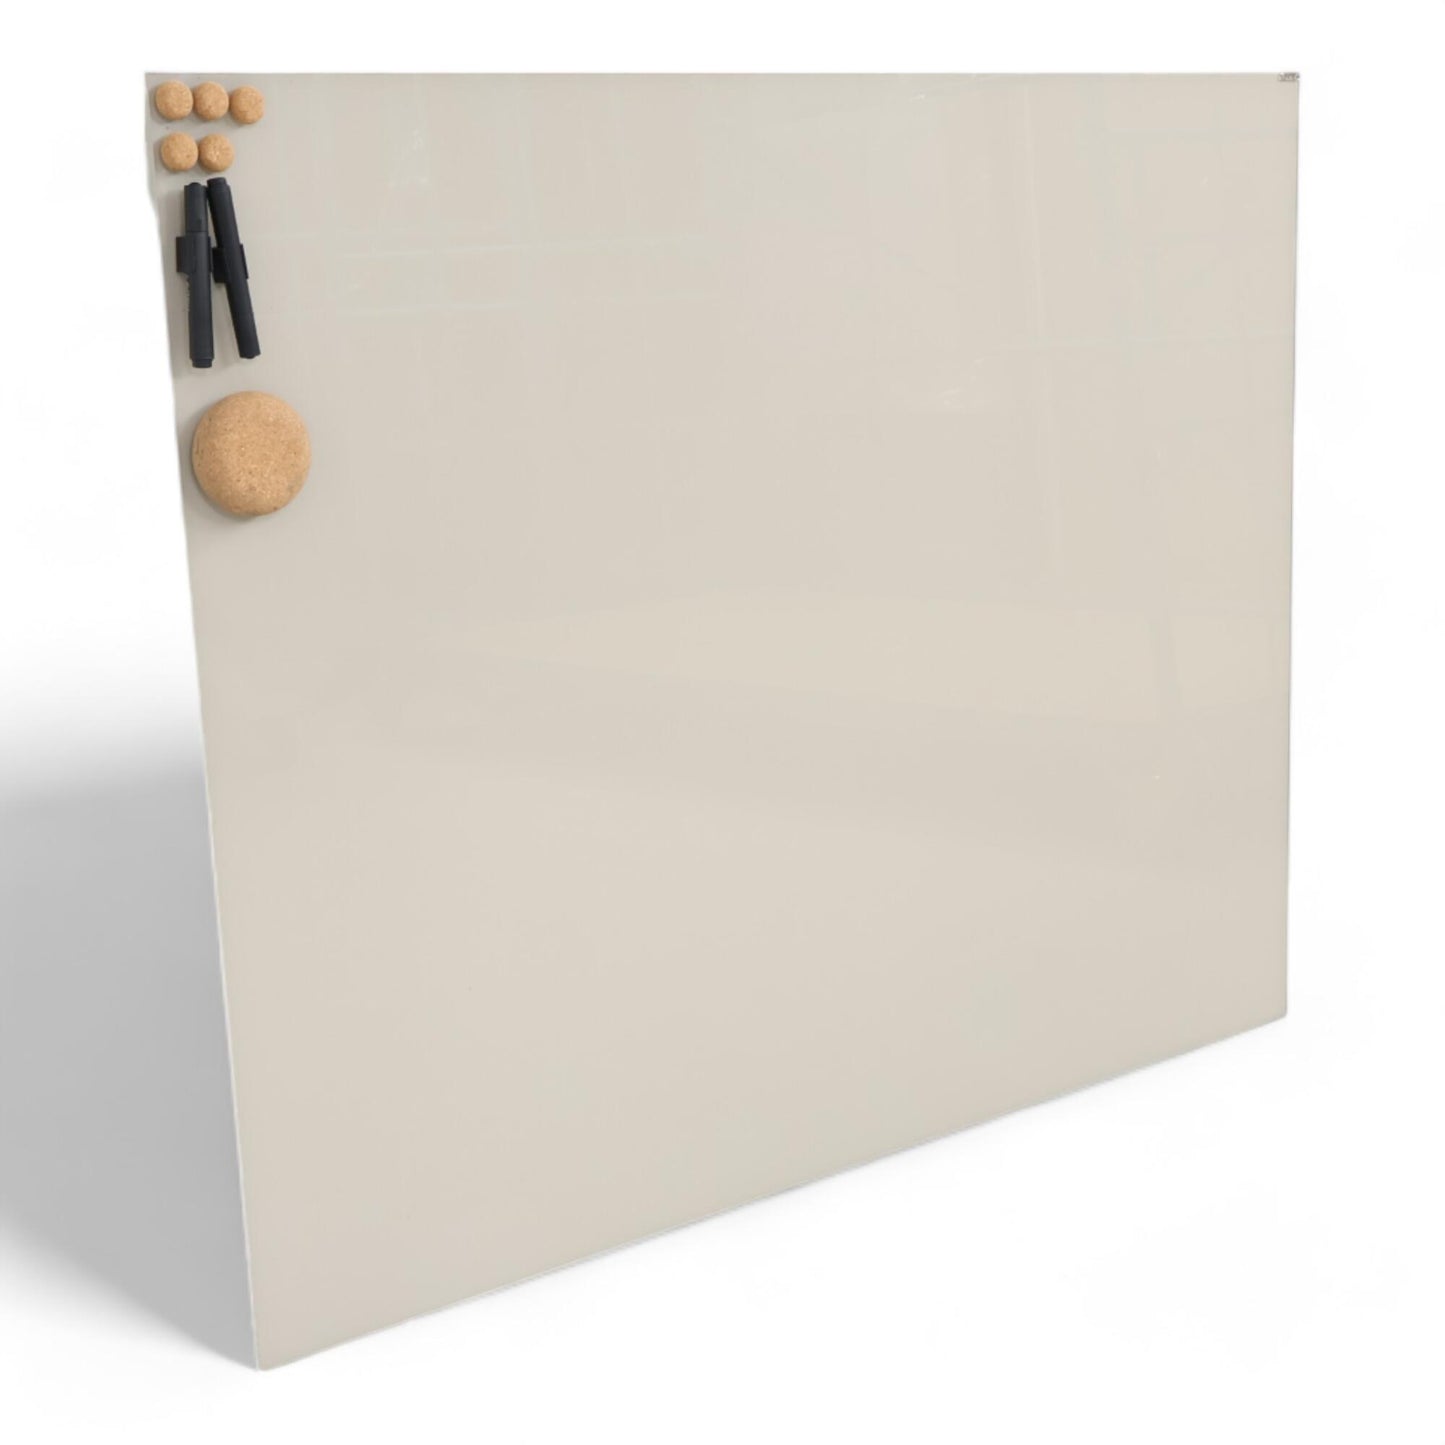 Utmerket tilstand | Osnes Mood glasstavle i beige, 125x100 cm